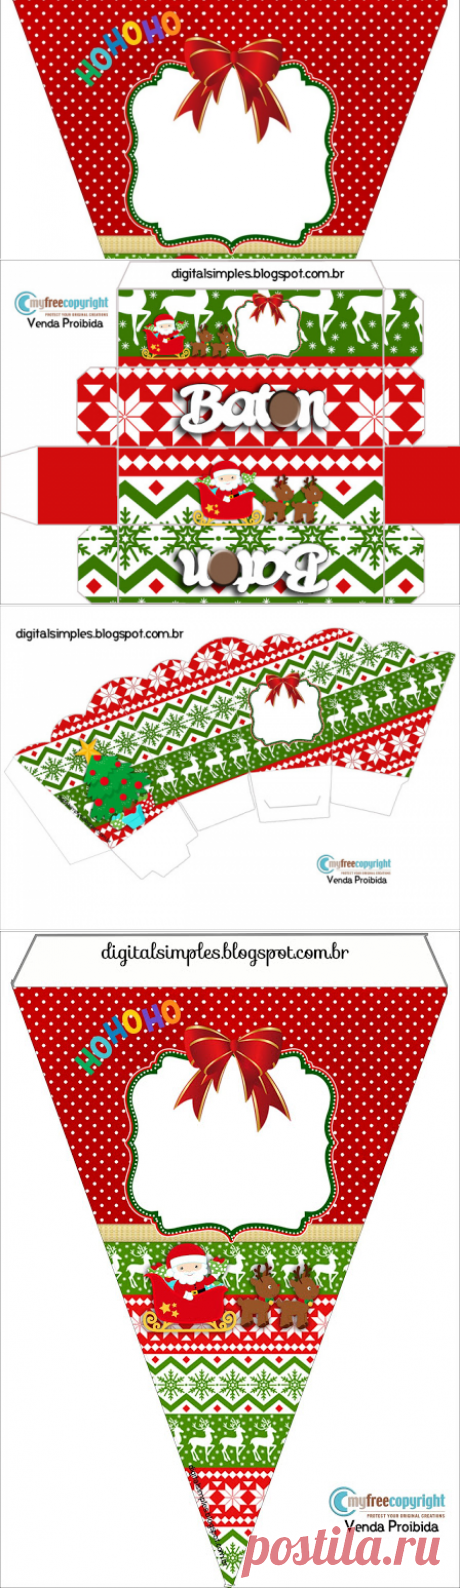 Mini Kit de Niños Esperando a Santa para Imprimir Gratis. | Ideas y material gratis para fiestas y celebraciones Oh My Fiesta!